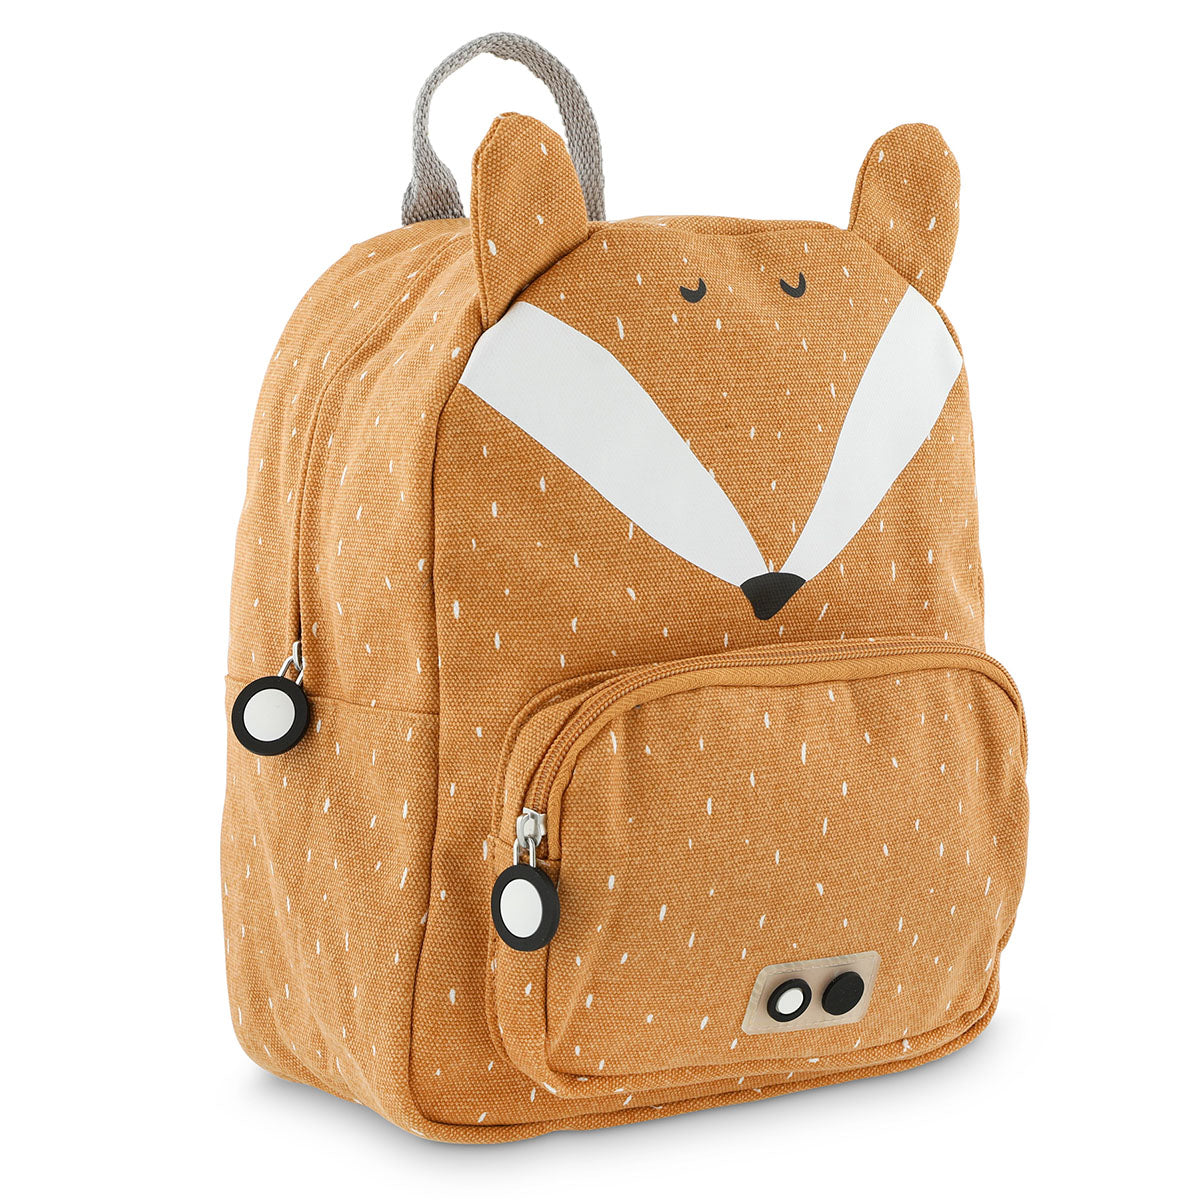 Met de Trixie Mr. Fox rugzak klein ben je klaar voor avontuur! In deze oranje schooltas kan je al je spulletjes kwijt voor een dagje weg. De oranje rugzak komt in de vorm van een leuk vosje. VanZus.